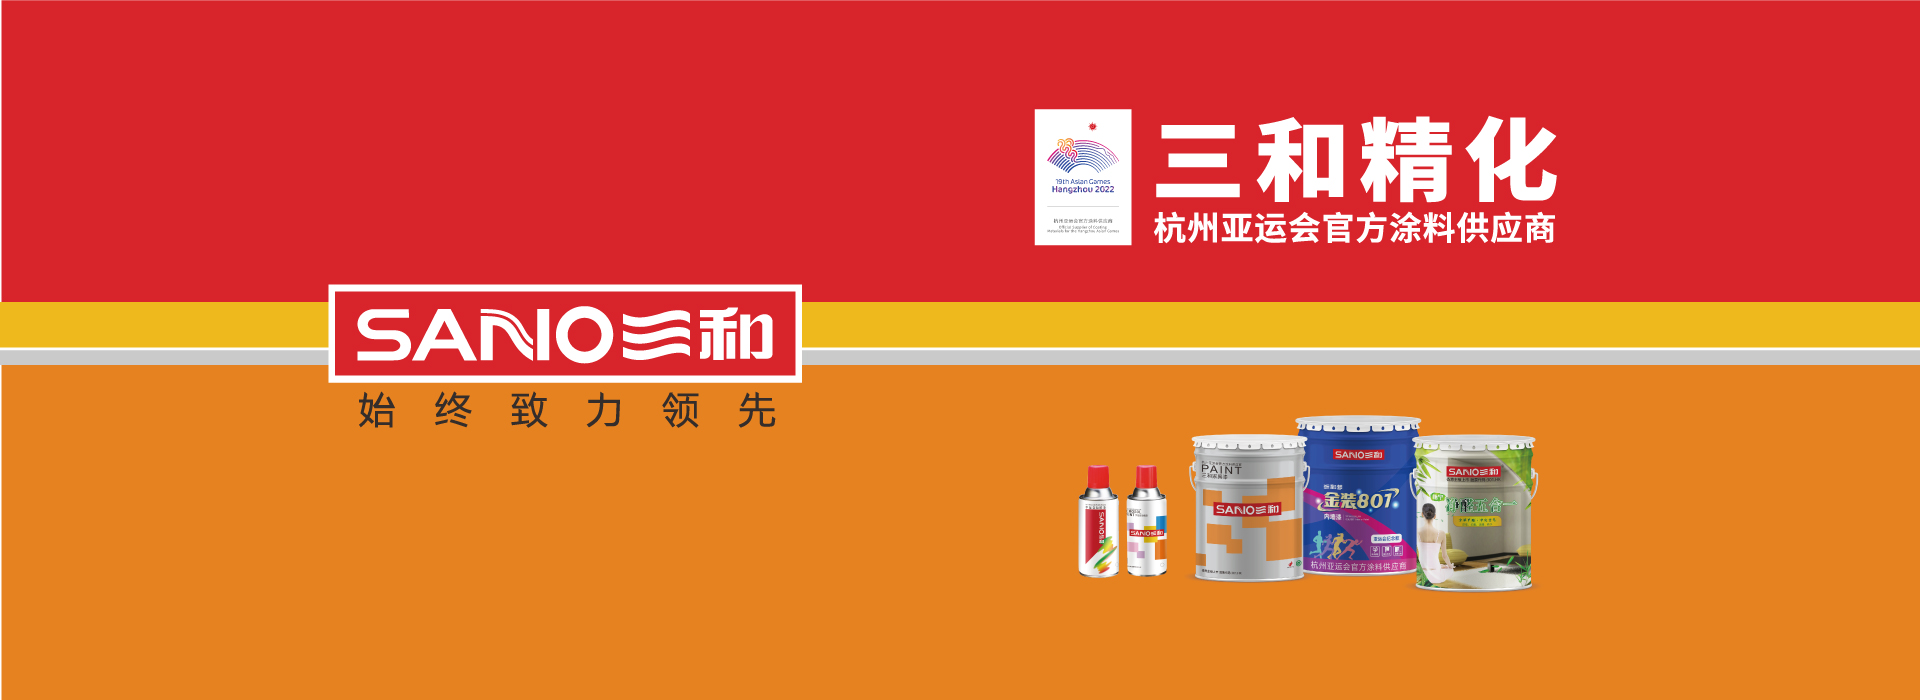 三和精化成為杭州亞運會官方涂料供應商